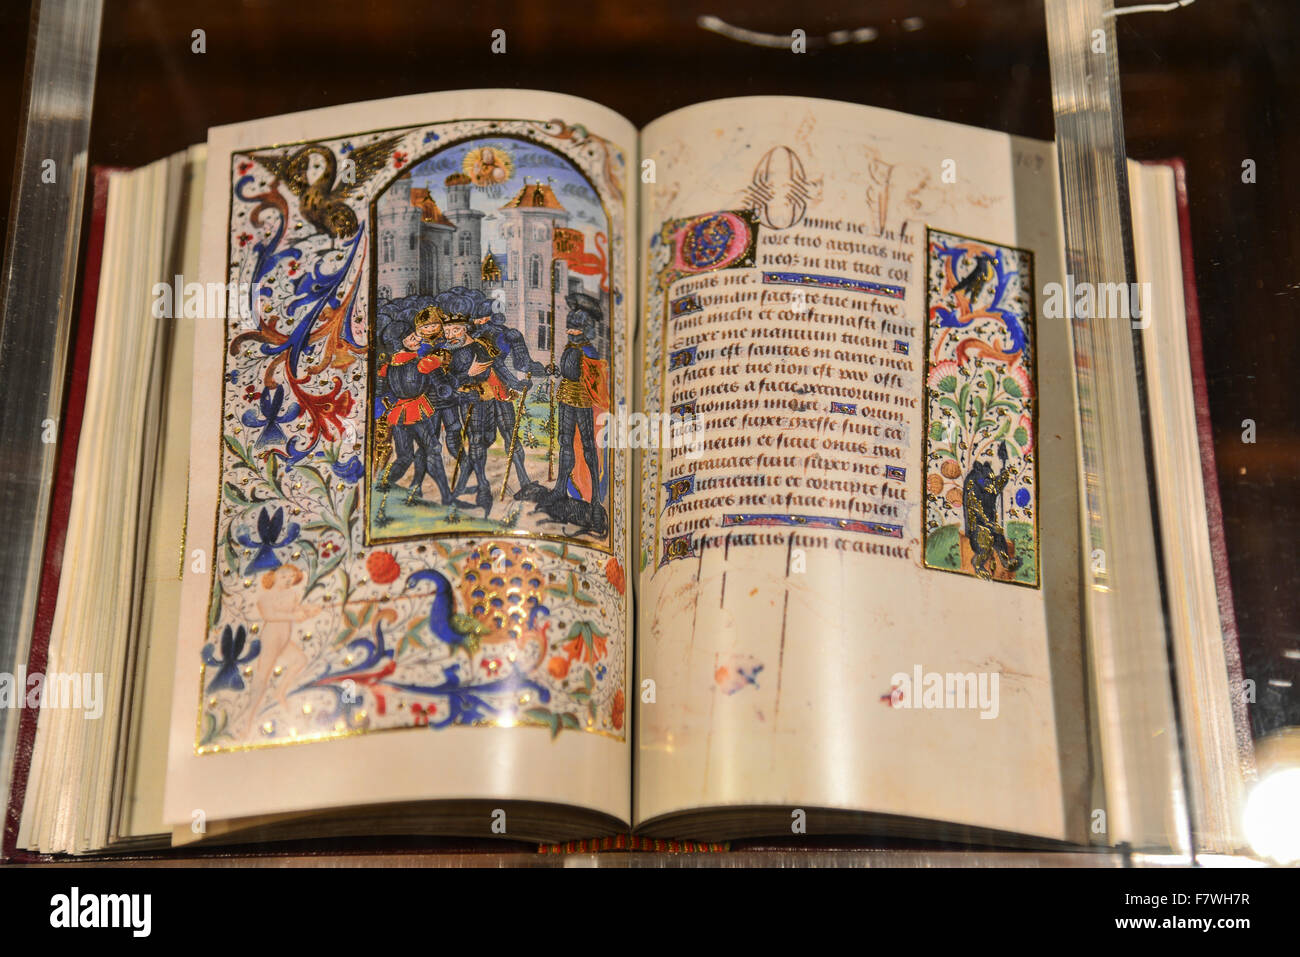 Dans le livre saint de l'Iglesia de Santa Maria la Mayor, Ronda, Espagne Banque D'Images